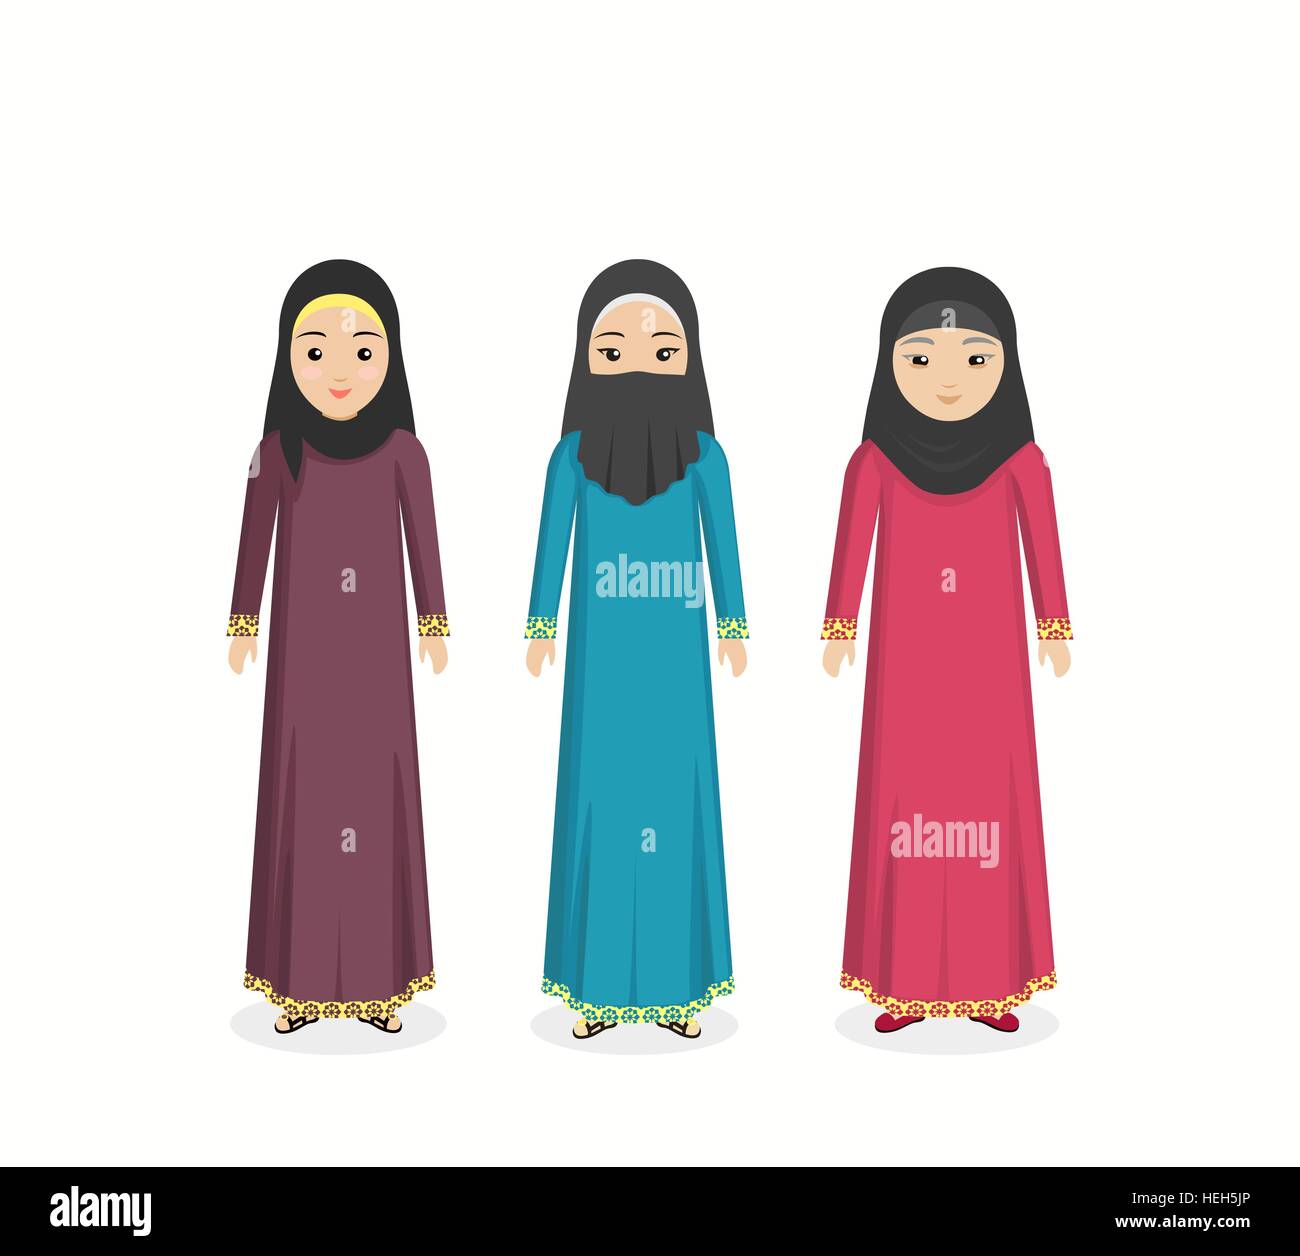 Arabian vêtements traditionnels. Traditionnel arabe, arabe musulmane  habillement femme, robe arabe l'Est, l'origine ethnique, visage islamique  Image Vectorielle Stock - Alamy